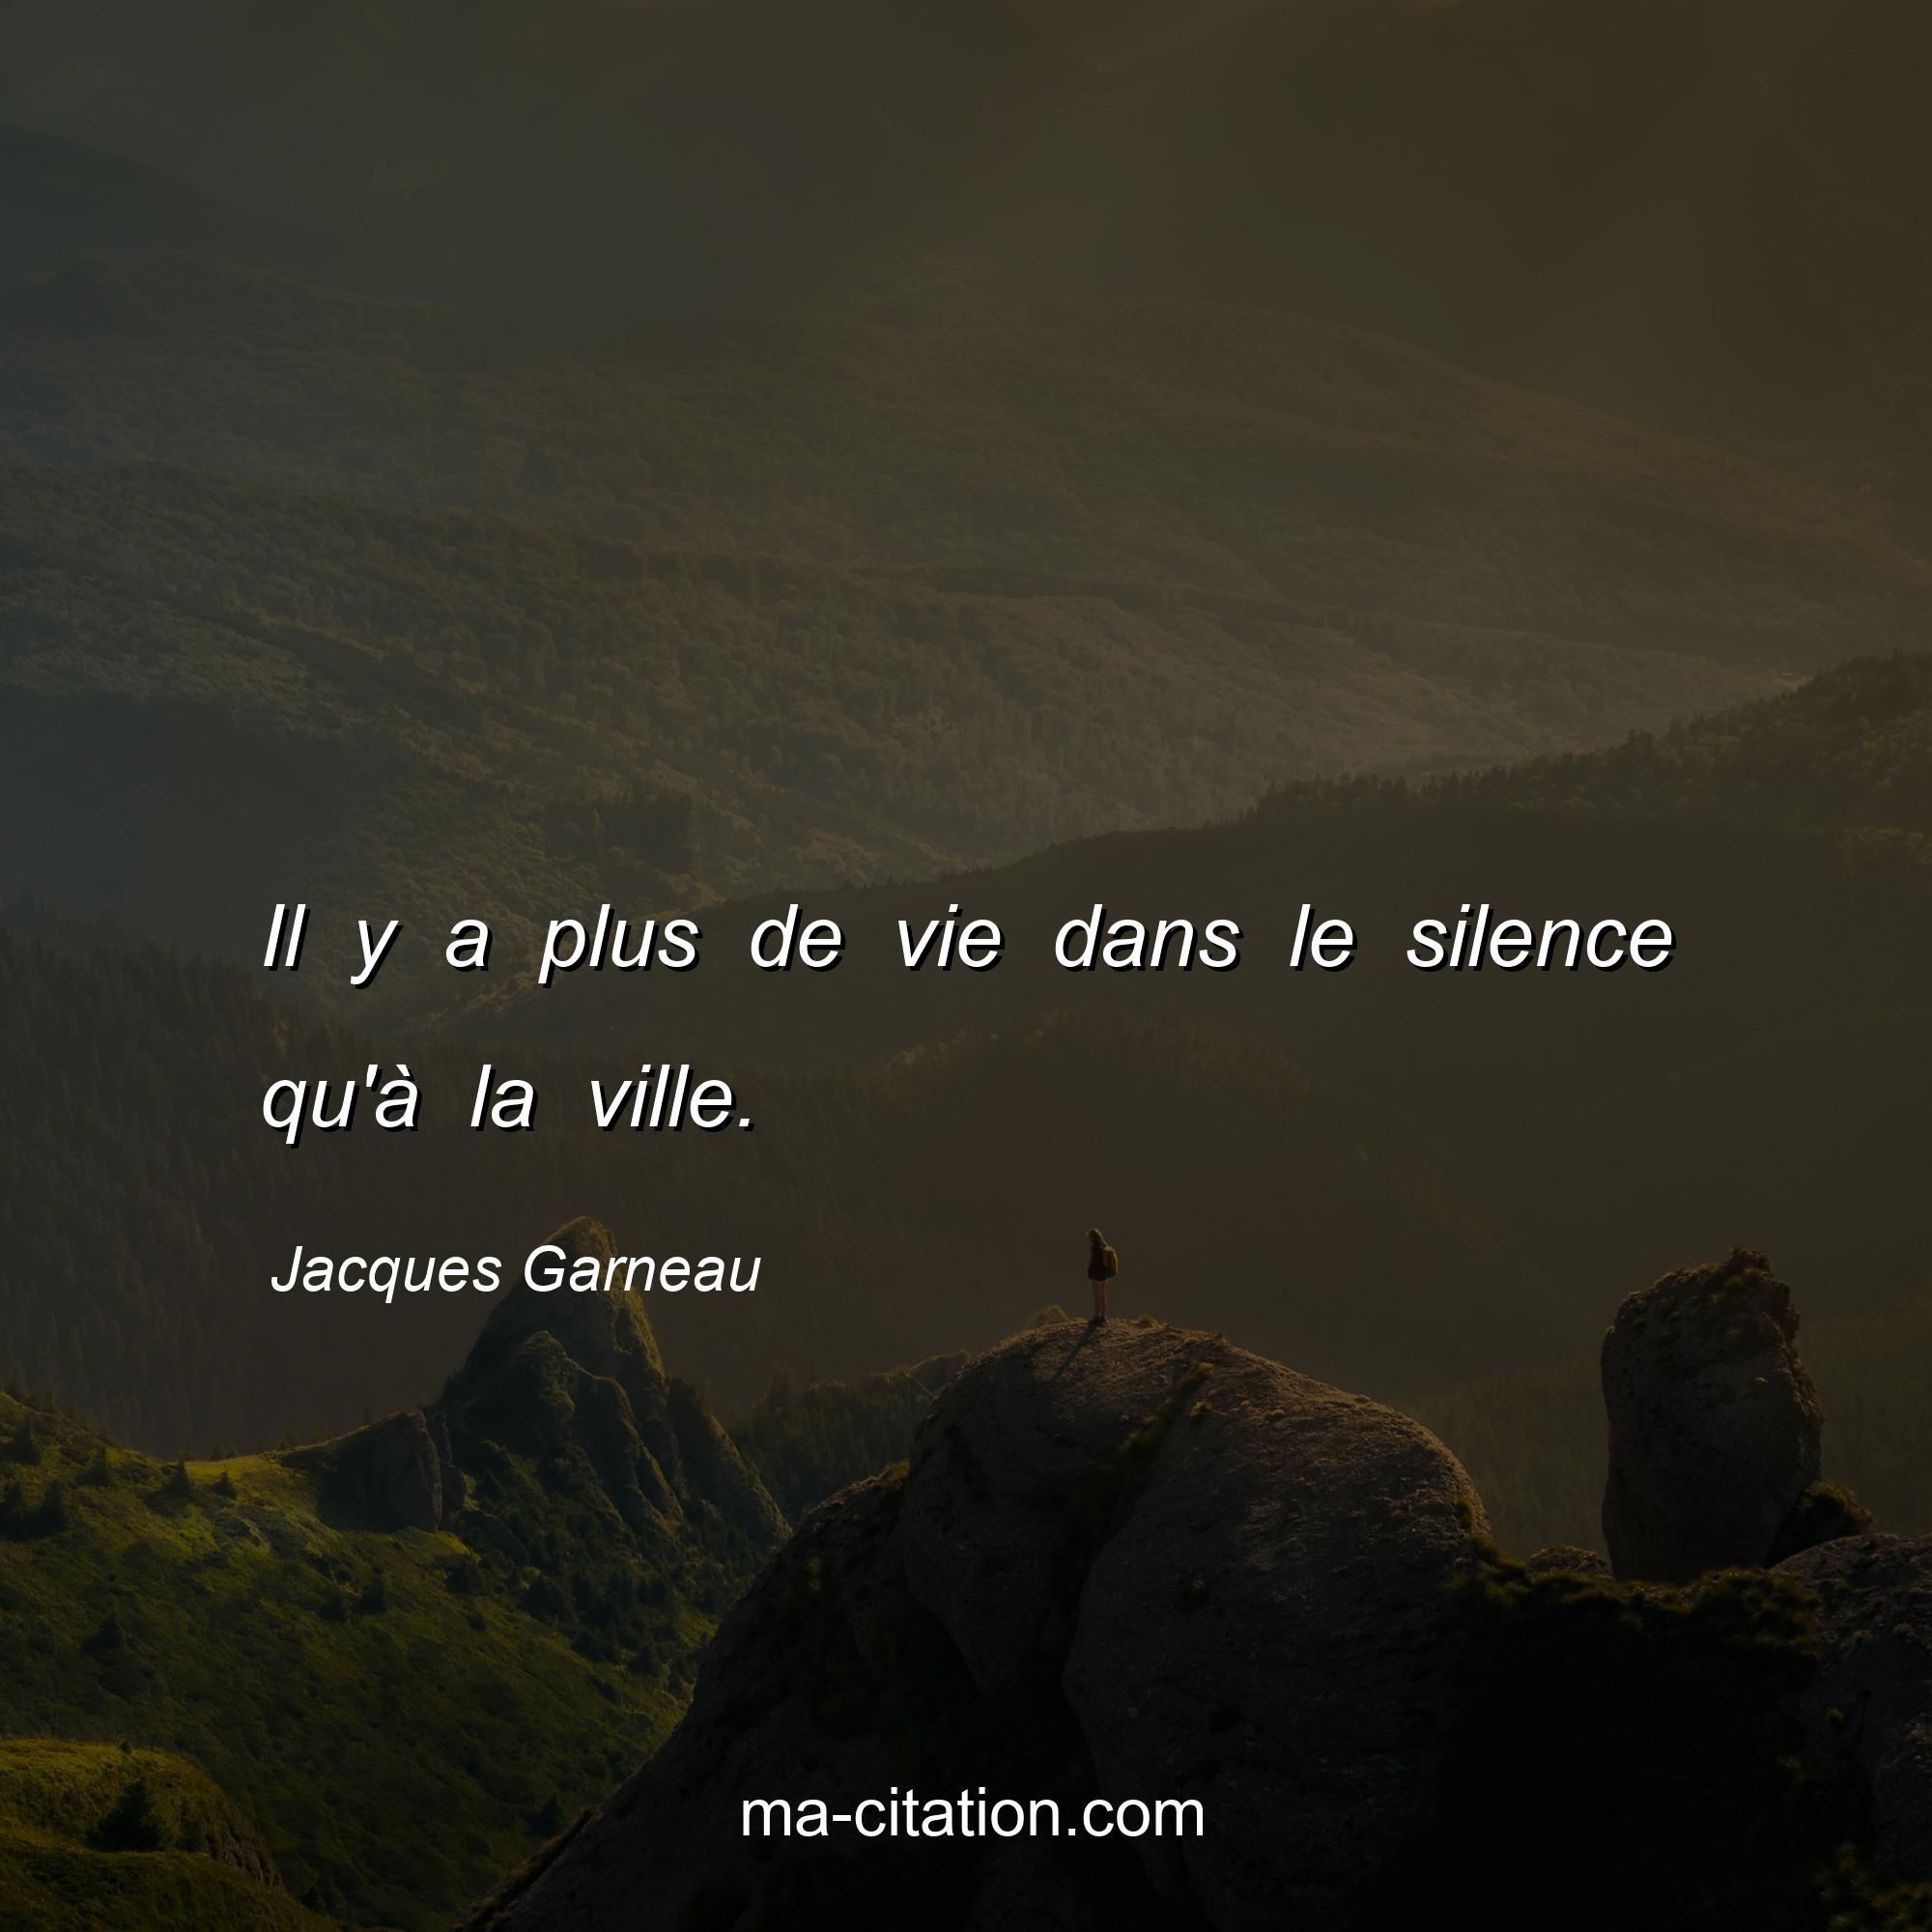 Jacques Garneau : Il y a plus de vie dans le silence qu'à la ville.